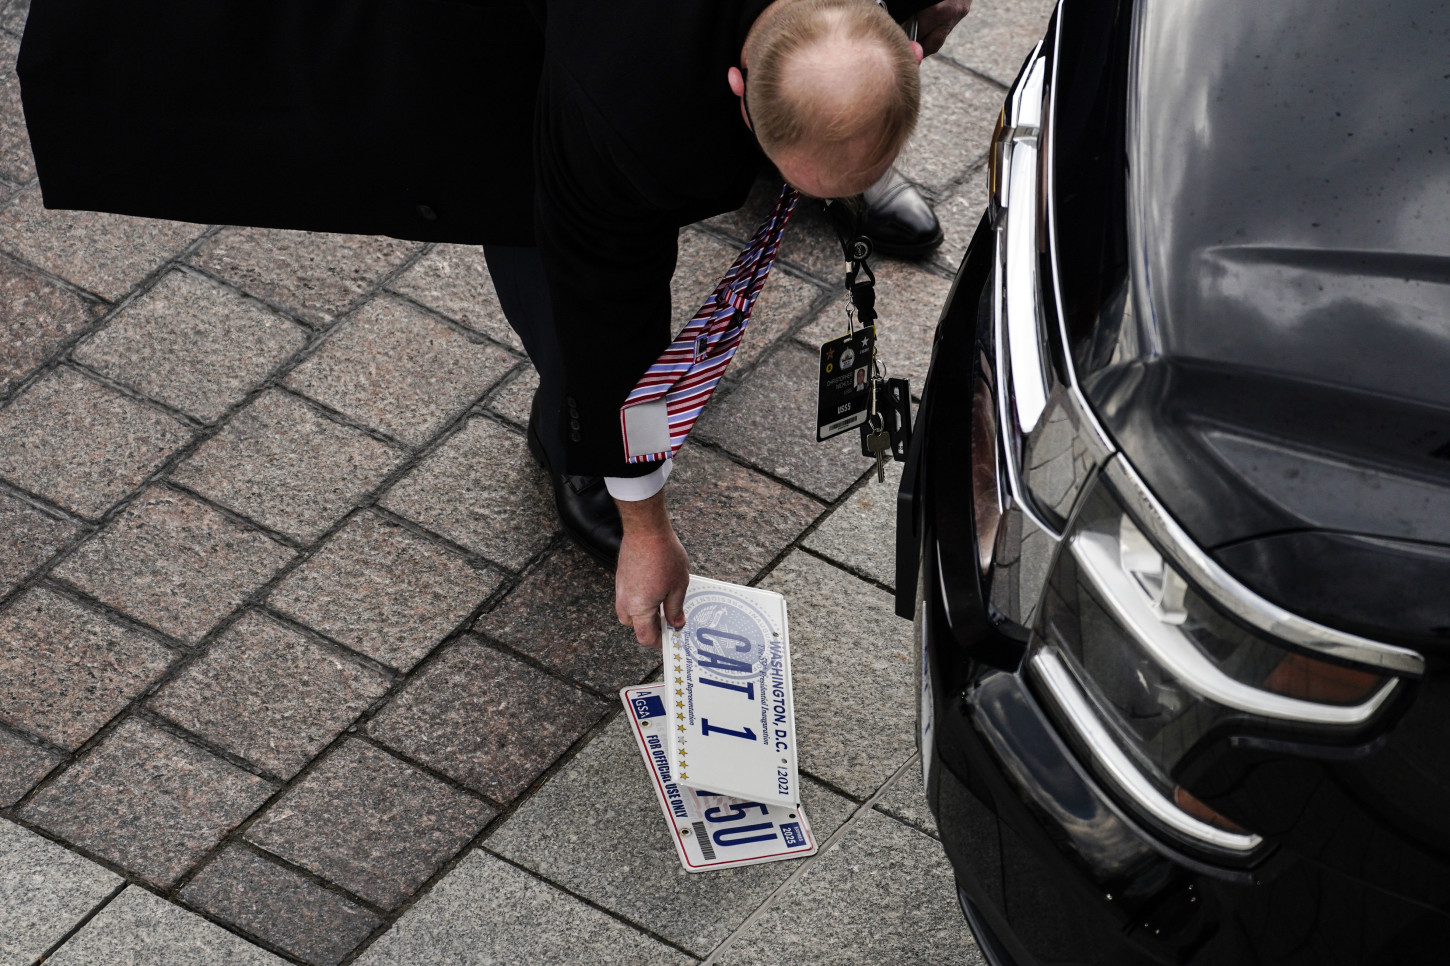 پلاک خودروهای ریاست جمهوری هم تغییر کرد + عکس